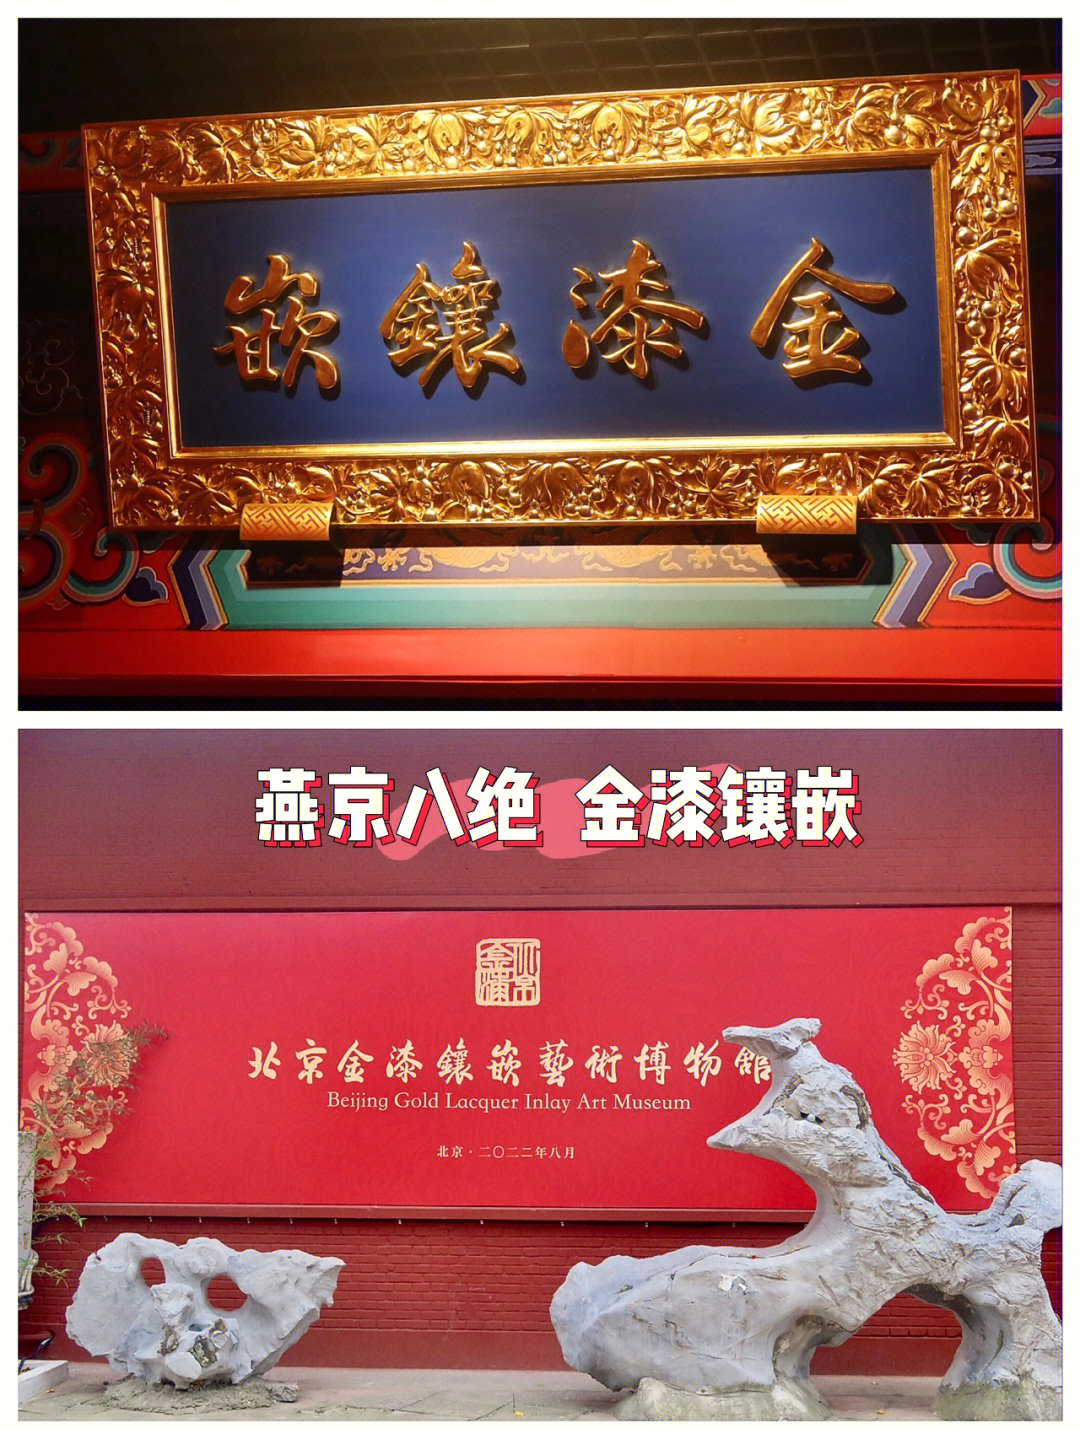 燕京八绝之金漆镶嵌艺术博物馆